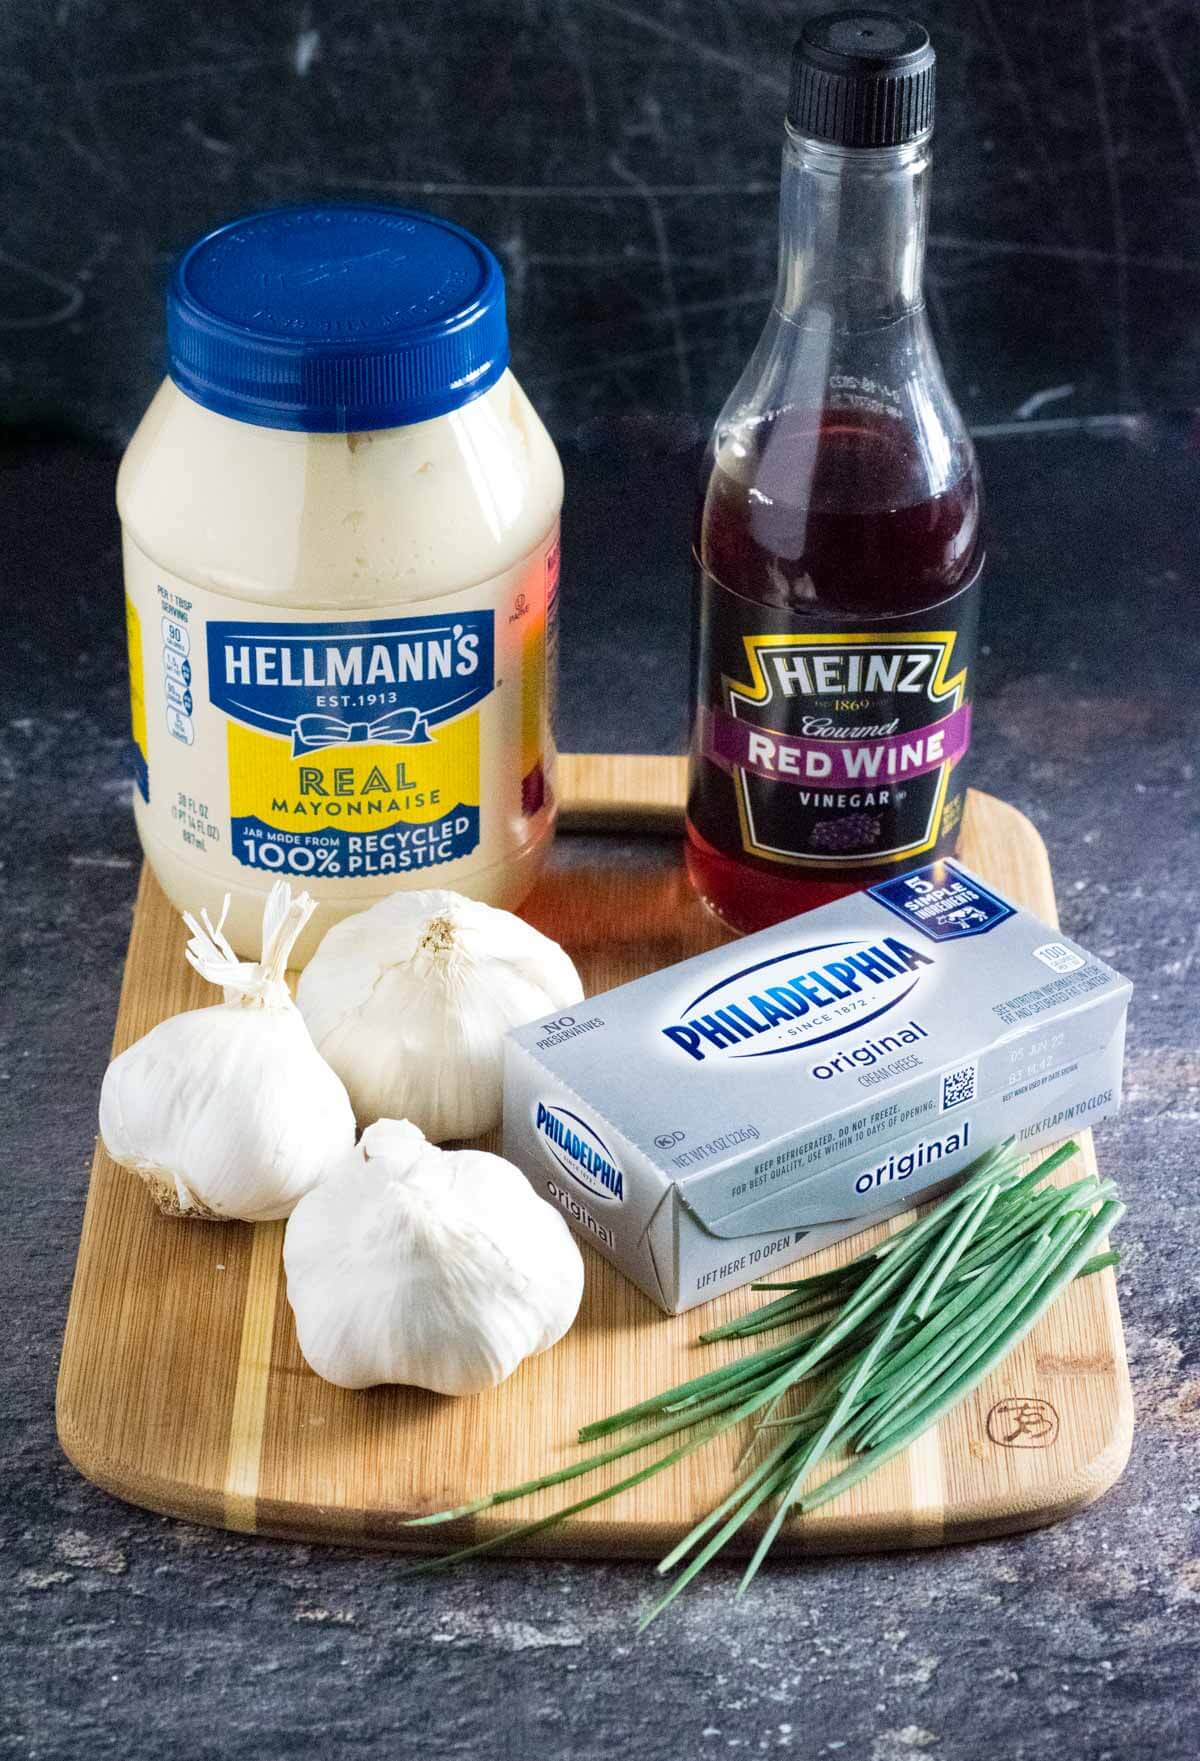 Showing ingredients needed to make roasted garlic dip.